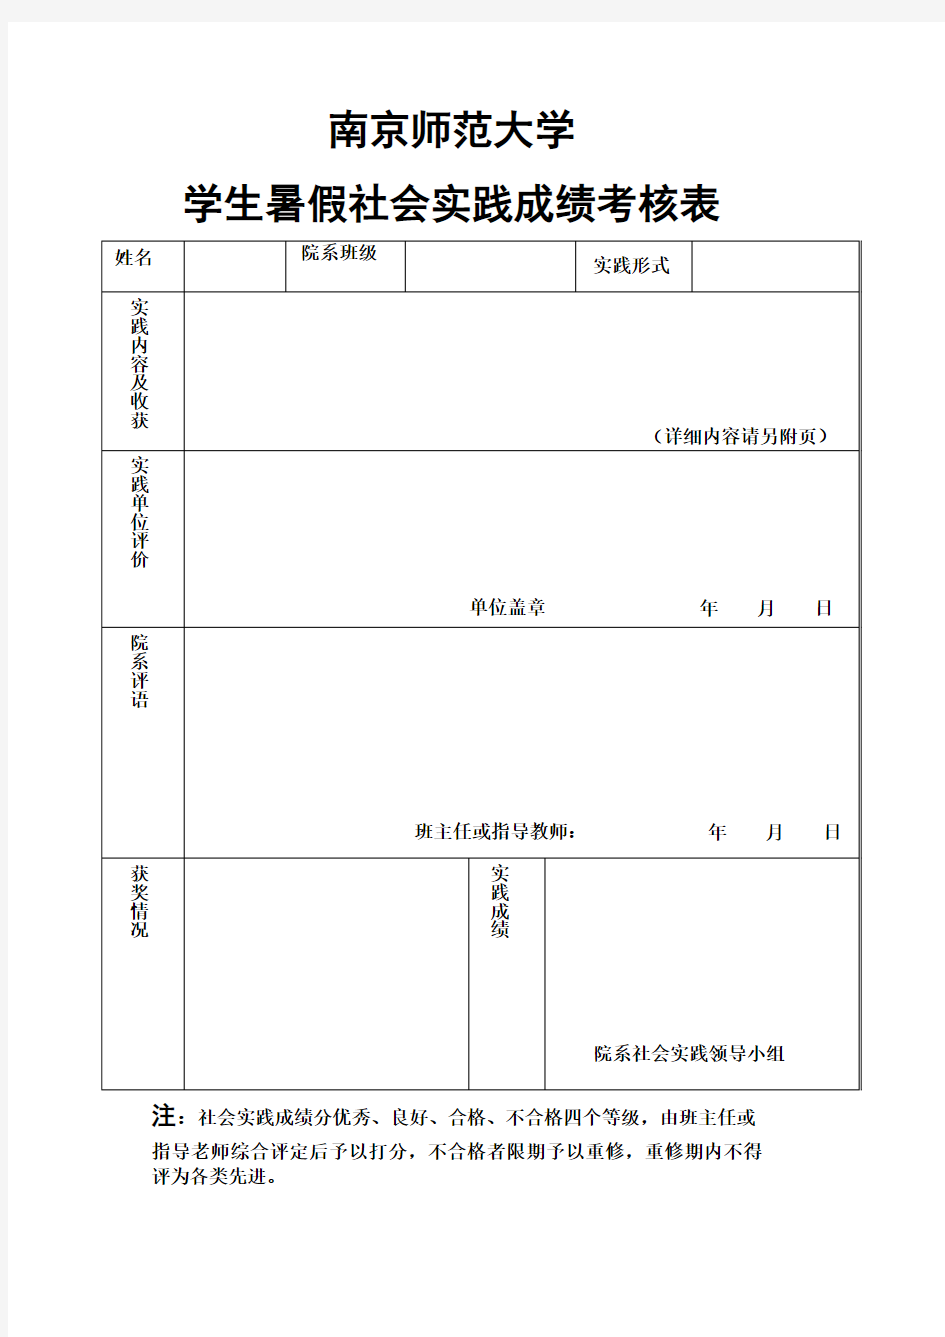 南京师范大学 学生暑期社会实践成绩考核表